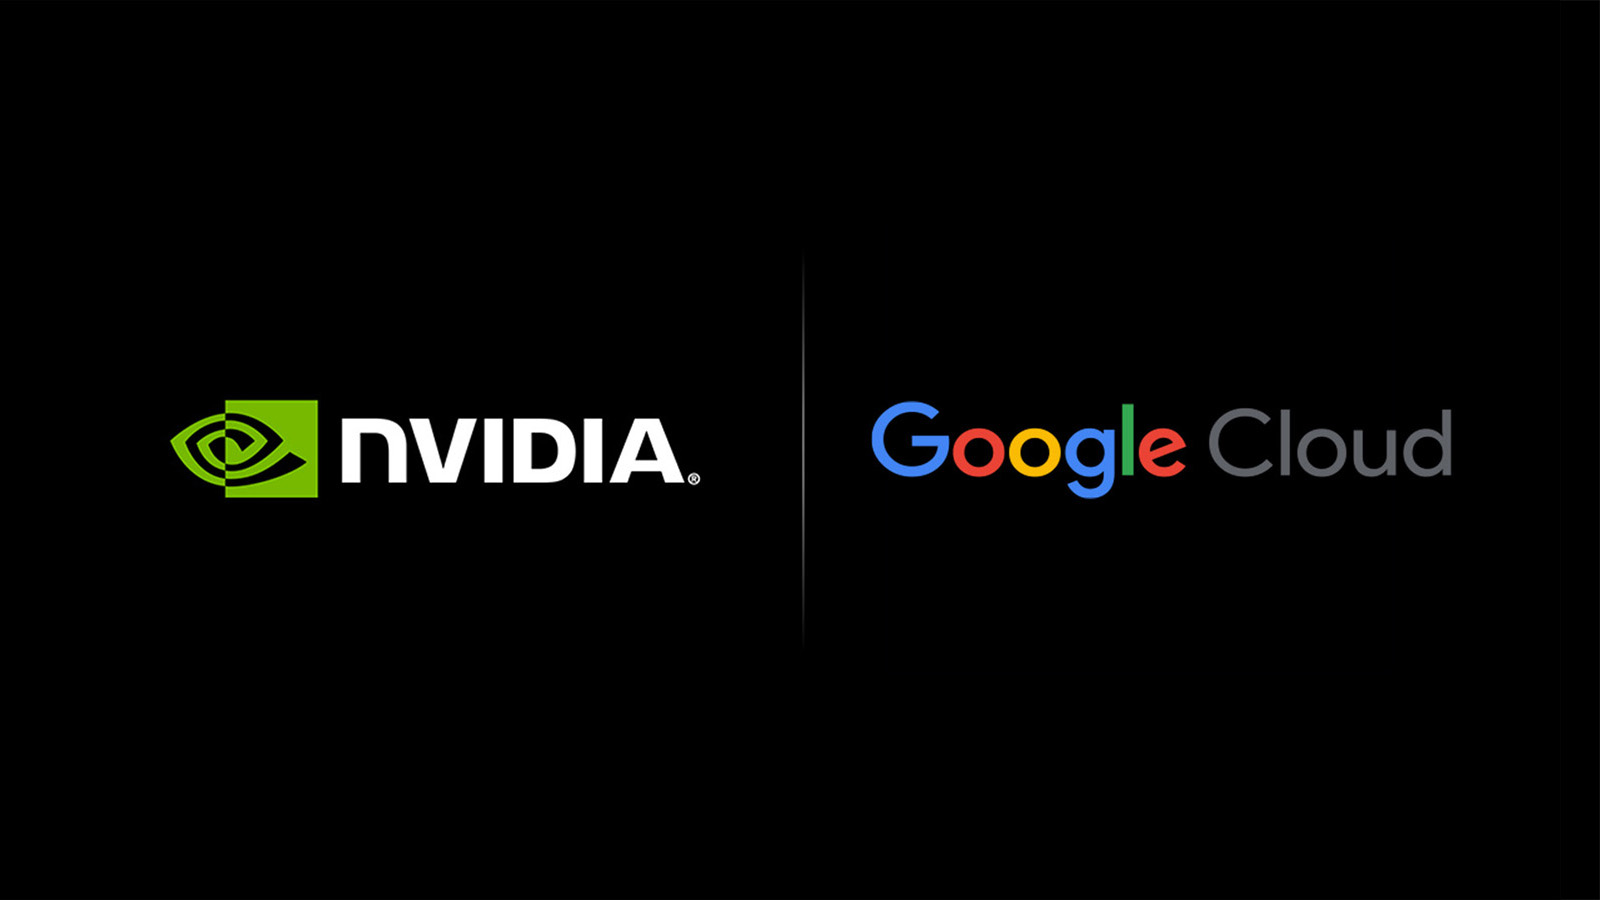 Google Cloud NVIDIA tillkännager utvidgning av ett viktigt partnerskap för artificiell intelligens